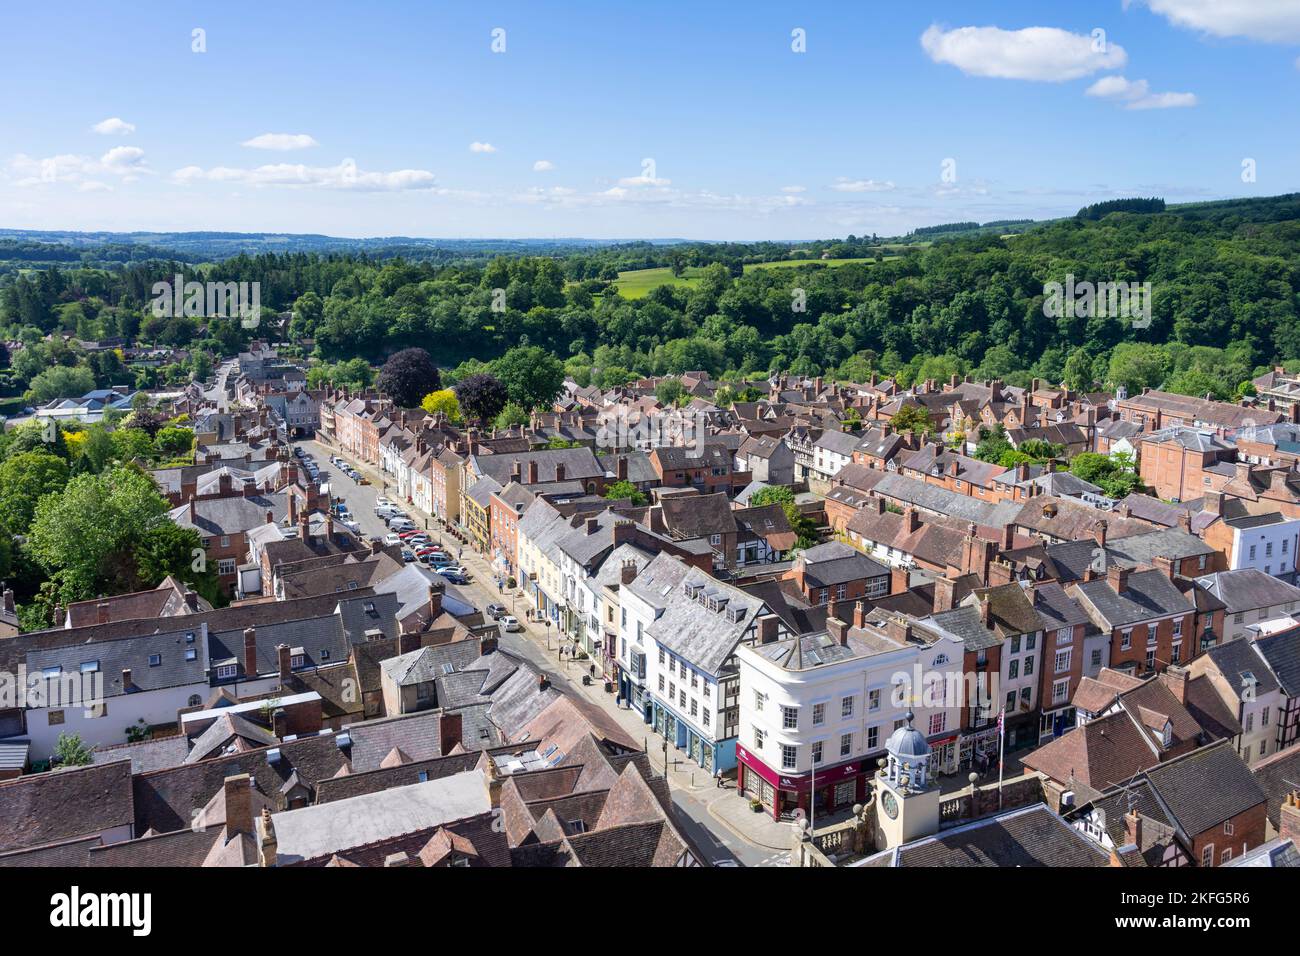 Ludlow Shropshire Blick auf die breite Straße und den kleinen Markt Stadtzentrum und Landschaft hinter Ludlow Shropshire England GB Europa Stockfoto